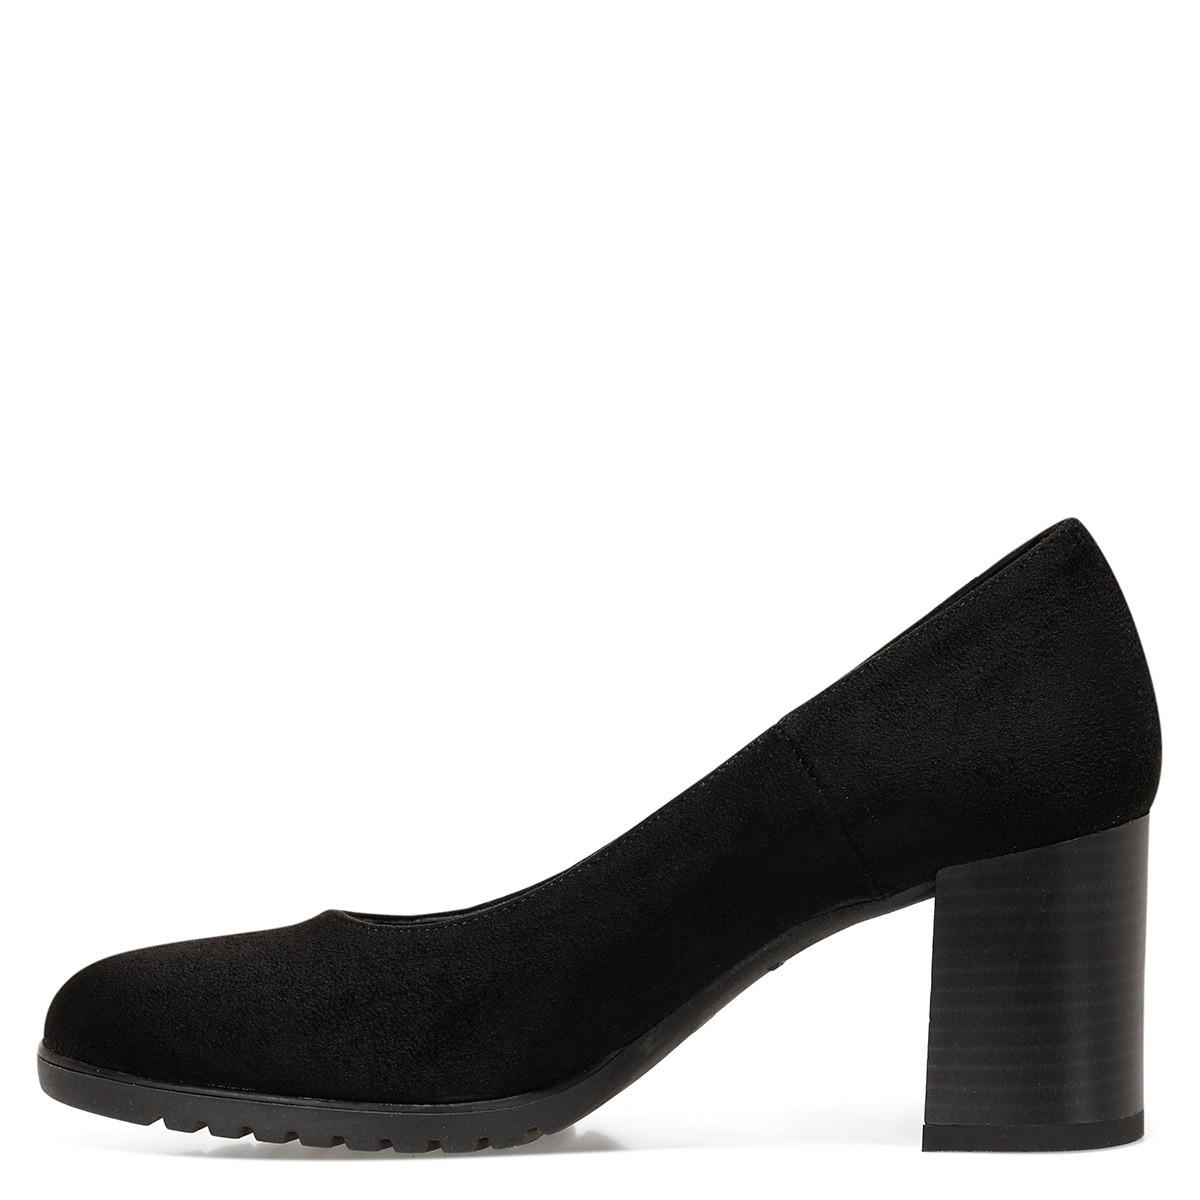 Nine West PVENS Siyah Kadın Klasik Topuklu Ayakkabı. 6